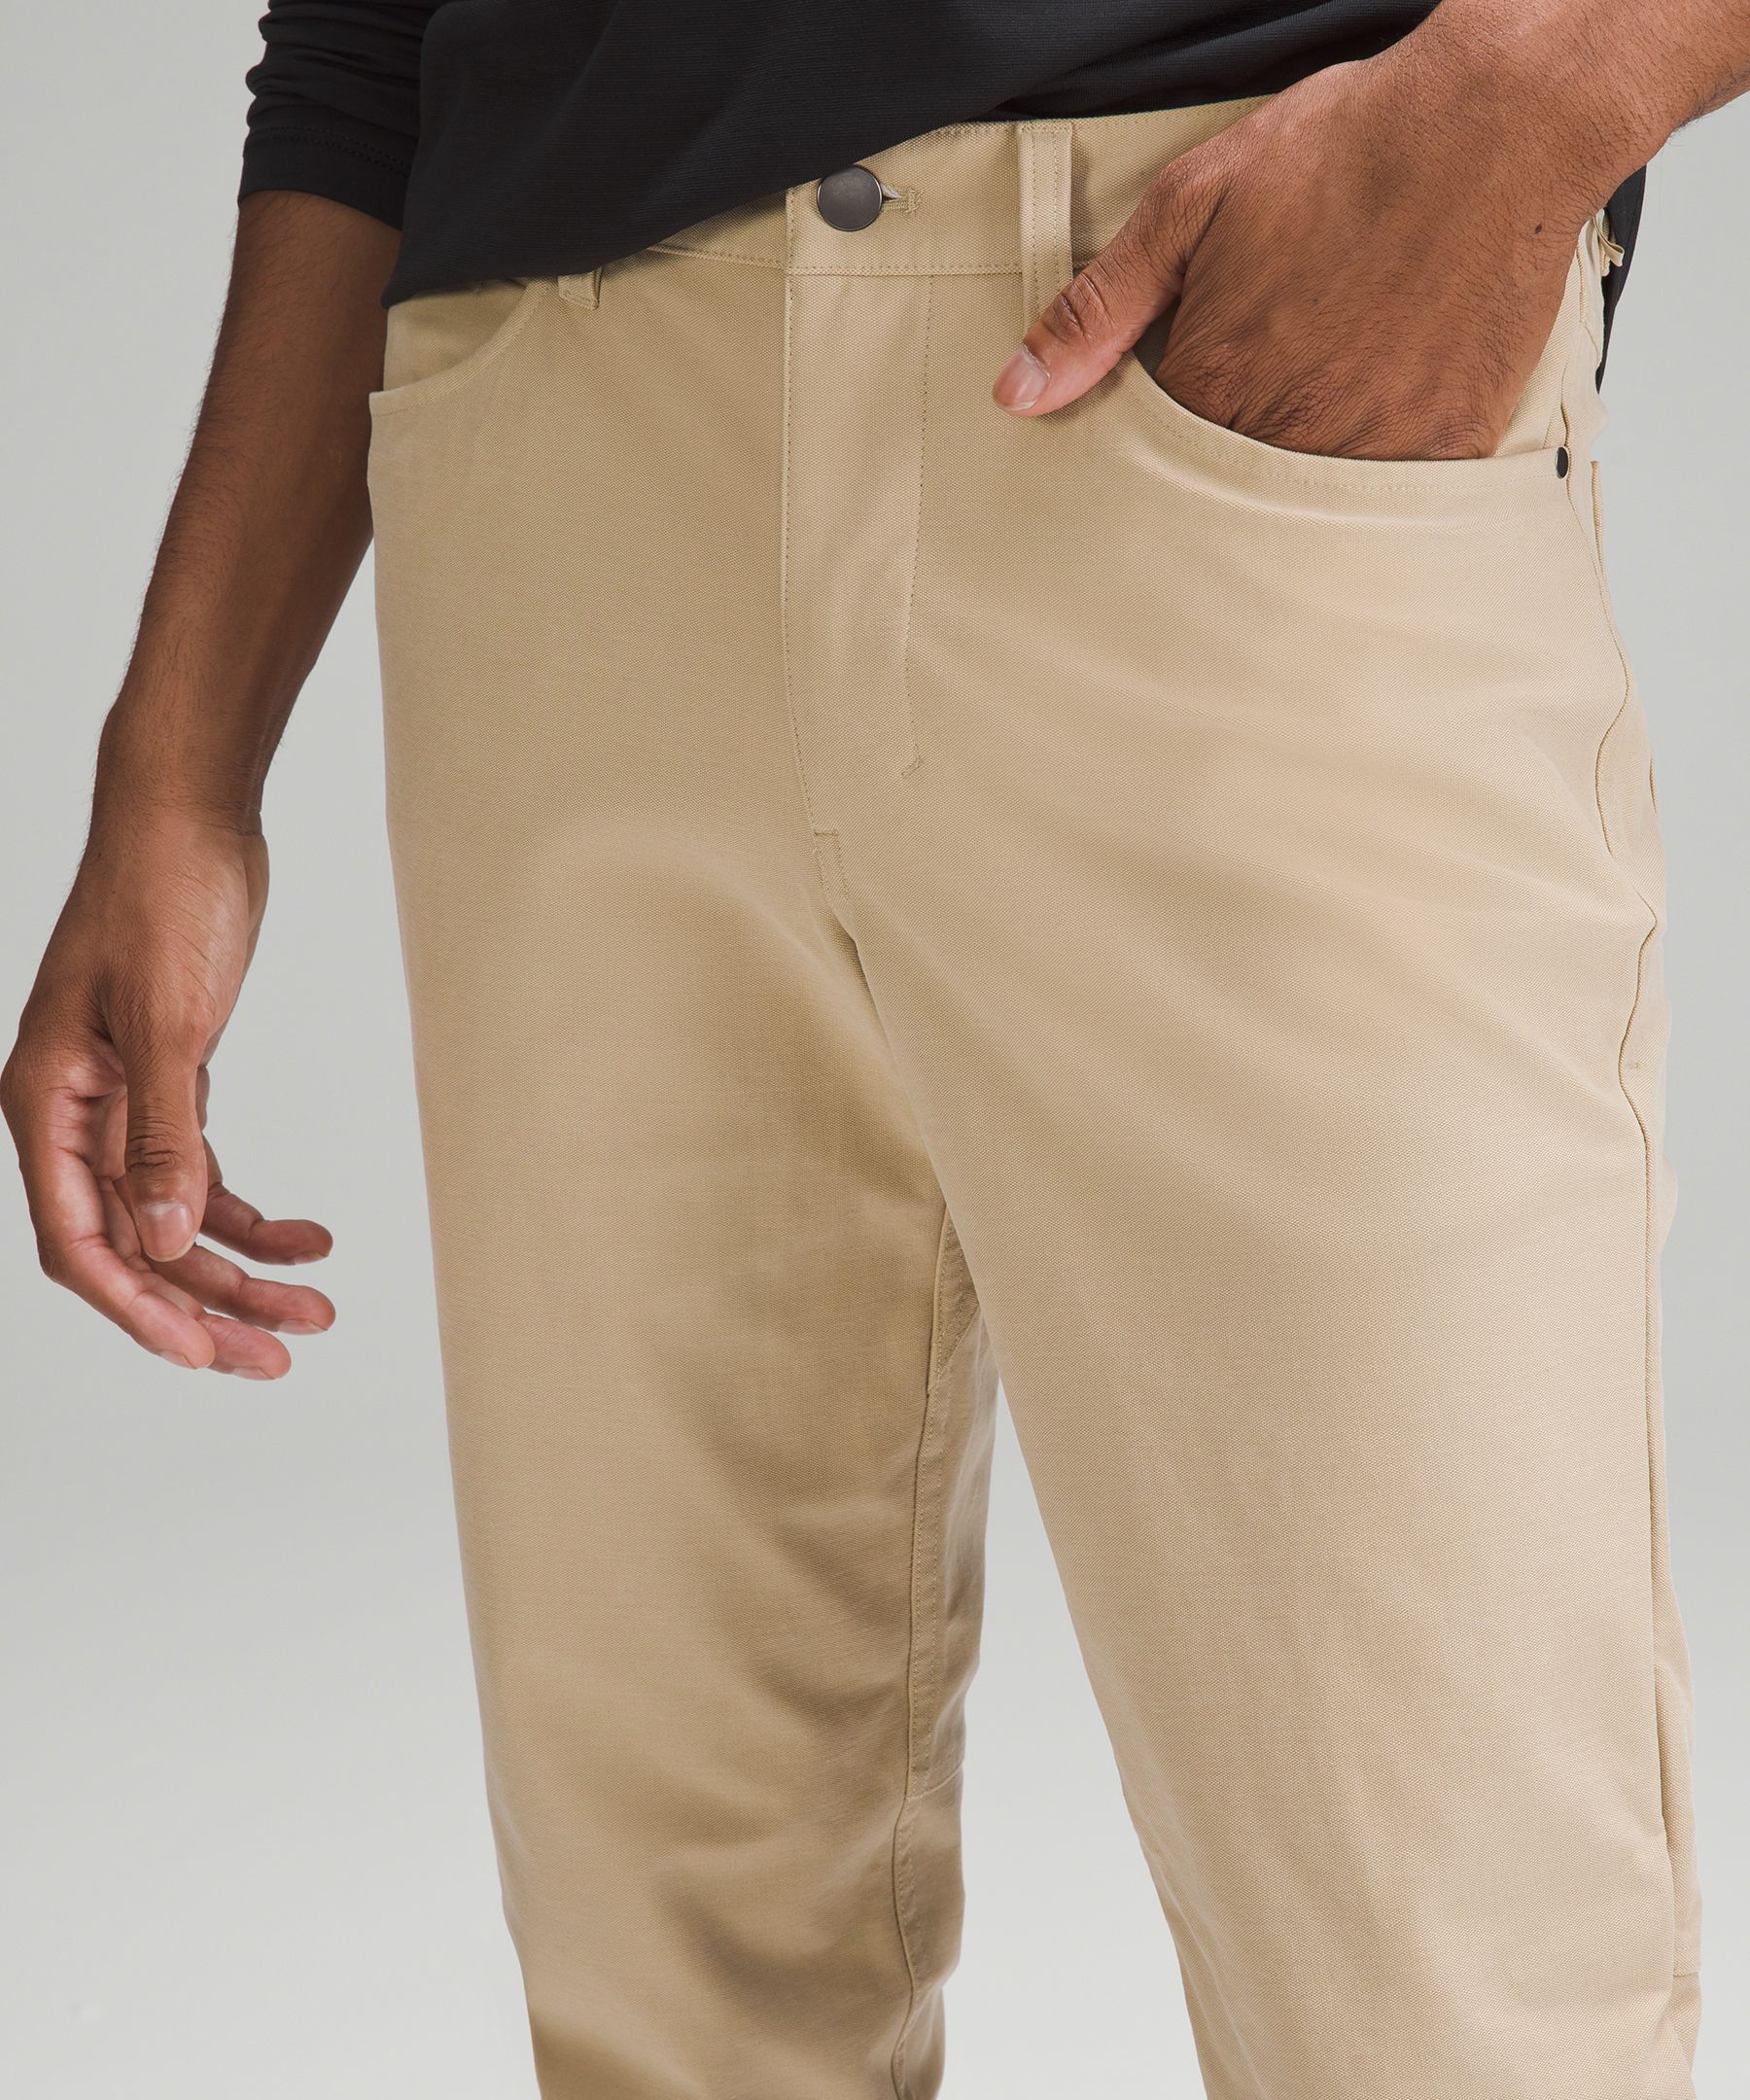 Penn State lululemon ABC Slim 32 Pants